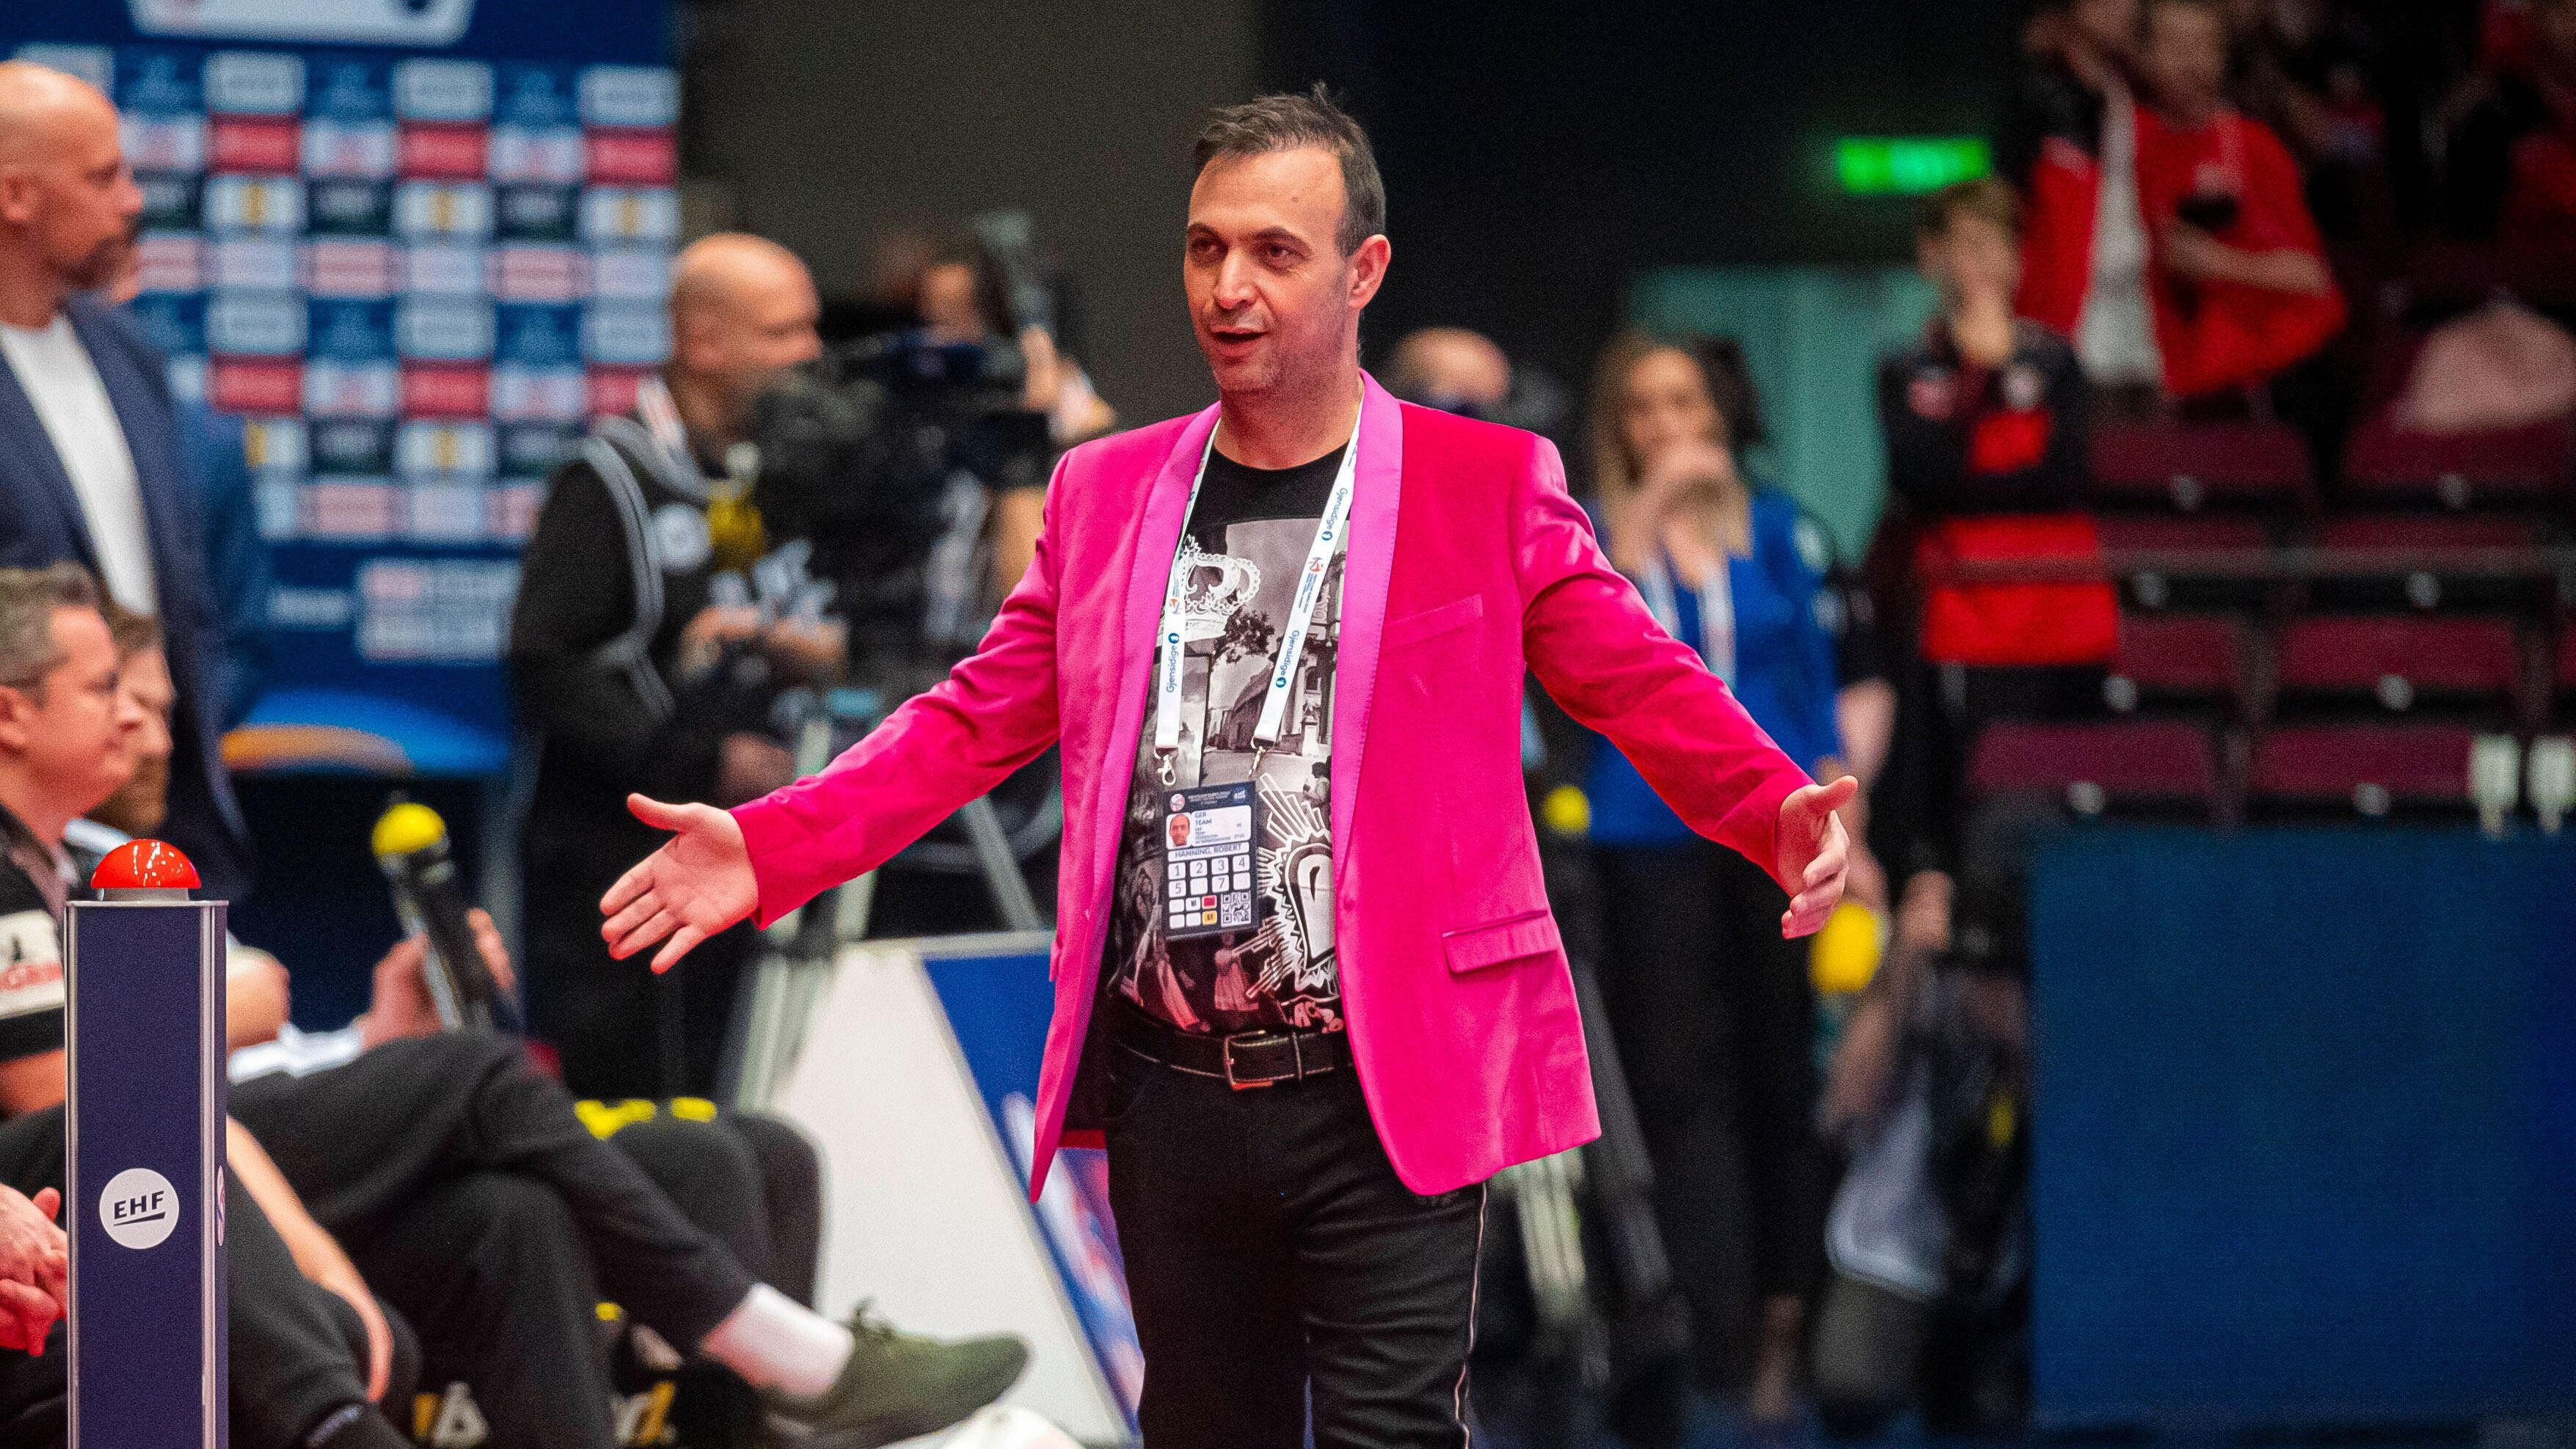 
                <strong>Pinke Power</strong><br>
                Beim Sieg der deutschen Handballer gegen Weißrussland sticht Bob Hanning mit einem neon-pinken Sakko heraus.
              